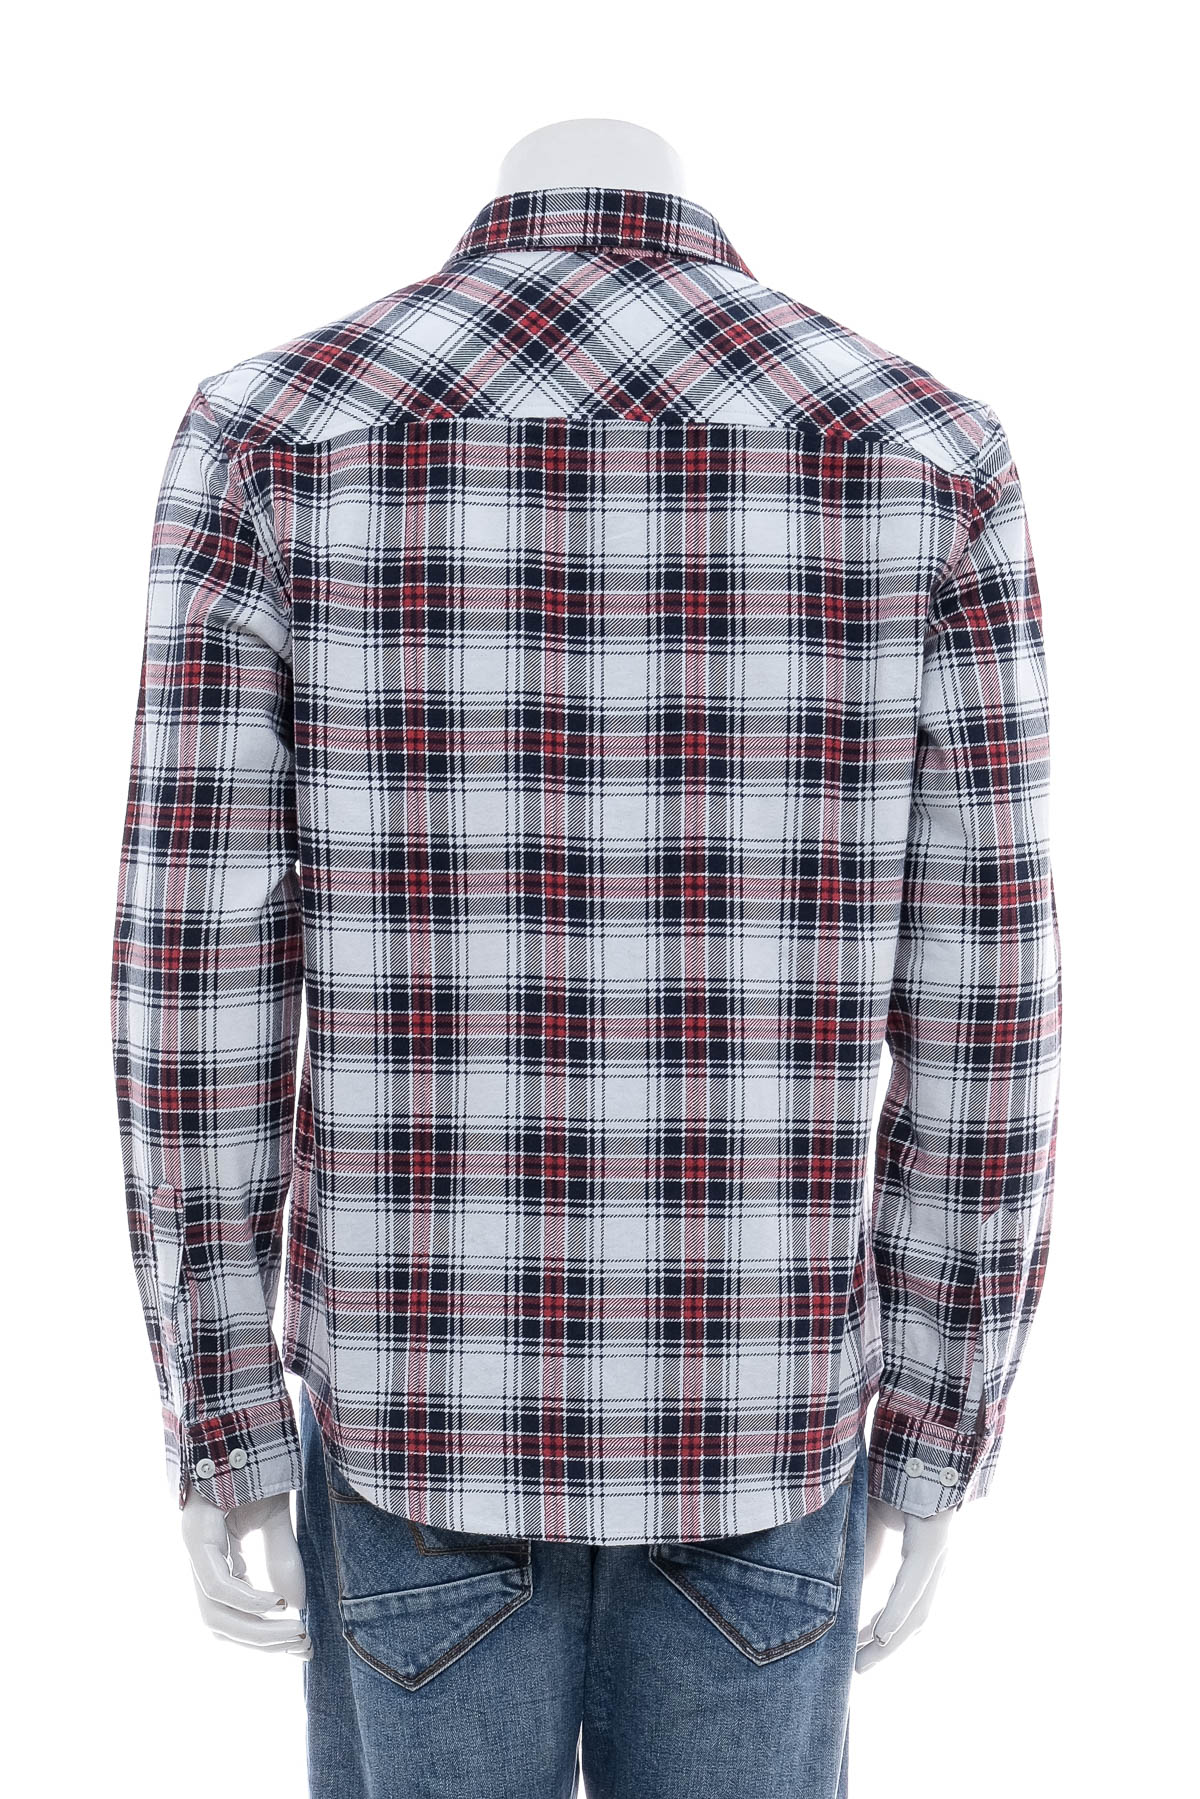 Ανδρικό πουκάμισο - Kmart - 1